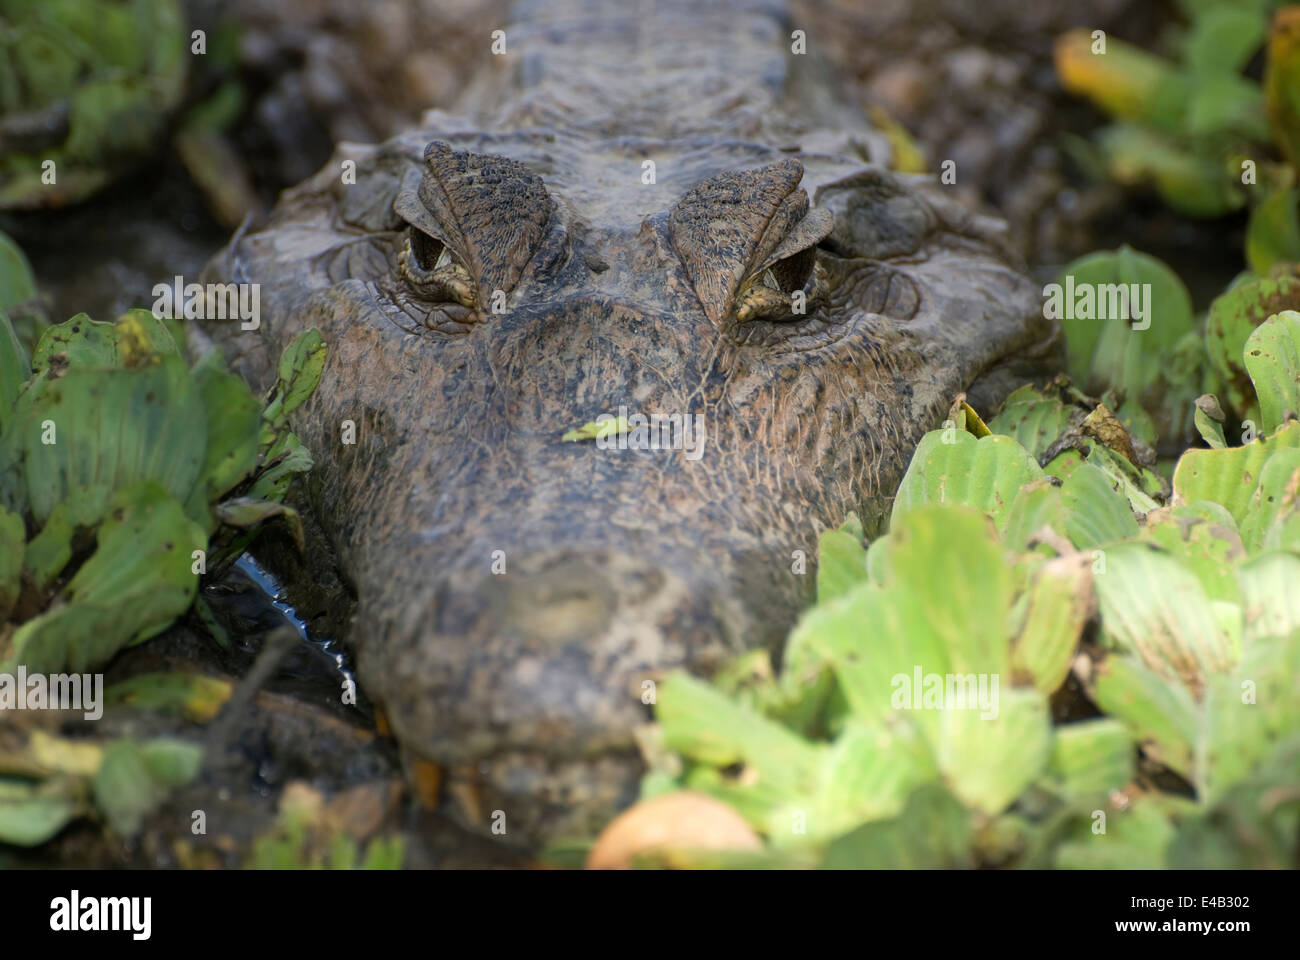 Caiman. Alligatorid crocodylians. Venezuela. Stock Photo